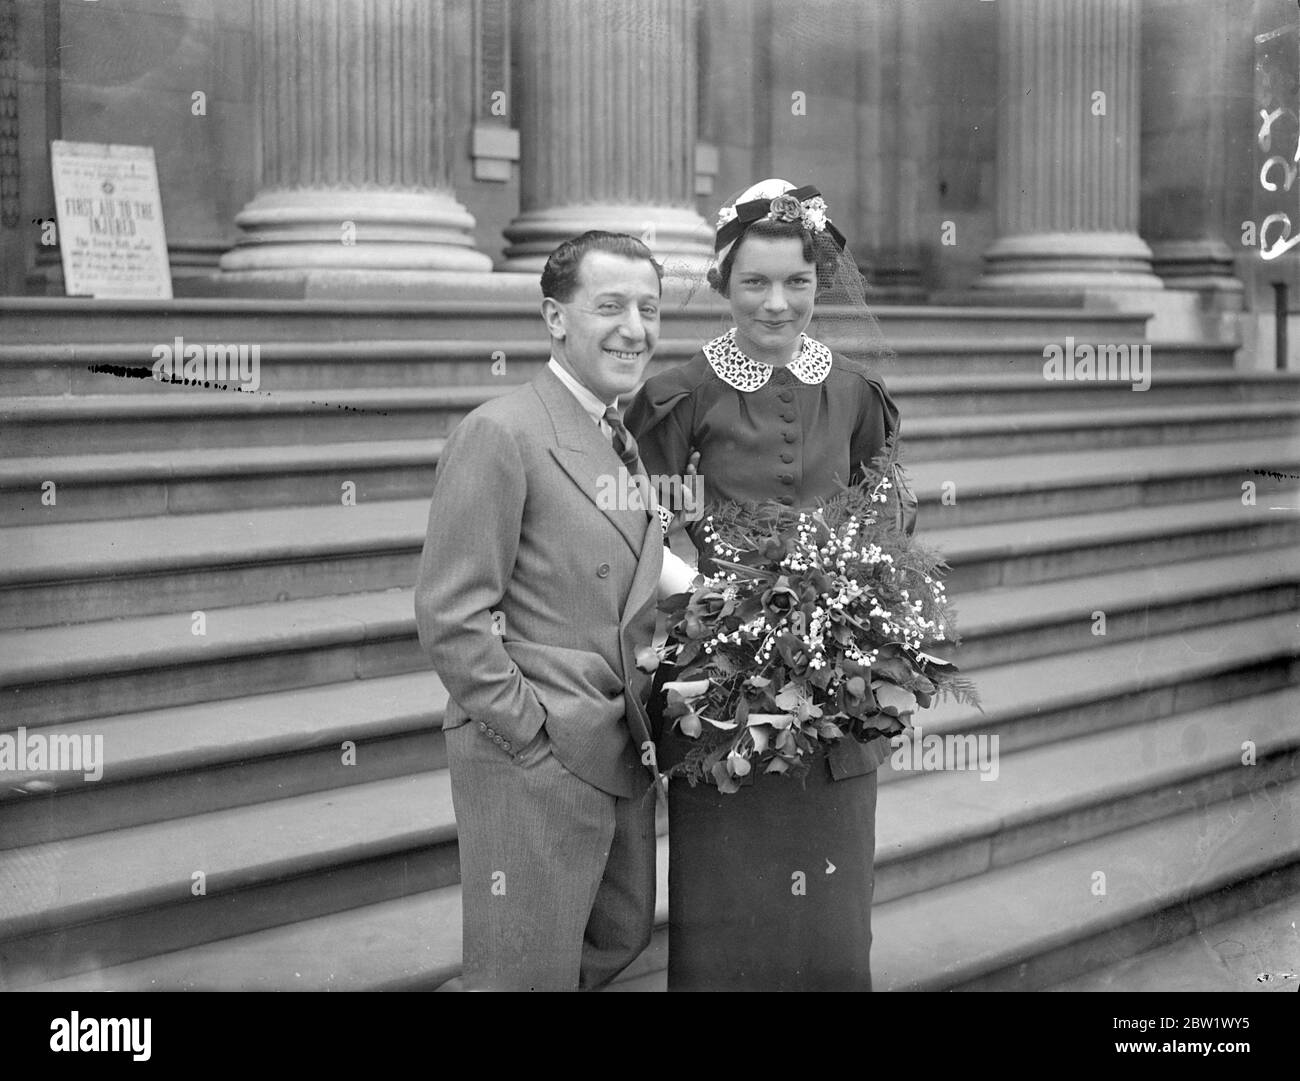 Der Tanzkapelle-Anführer heiratete heimlich in London. Lew Stone, der Tanzkapellmeister, war heimlich im Marylebone Register Office mit Miss Ethel Joyce Newman aus Amberley verheiratet. Foto zeigt, die Braut und Bräutigam nach der Hochzeit verlassen. Juni 1937 Stockfoto